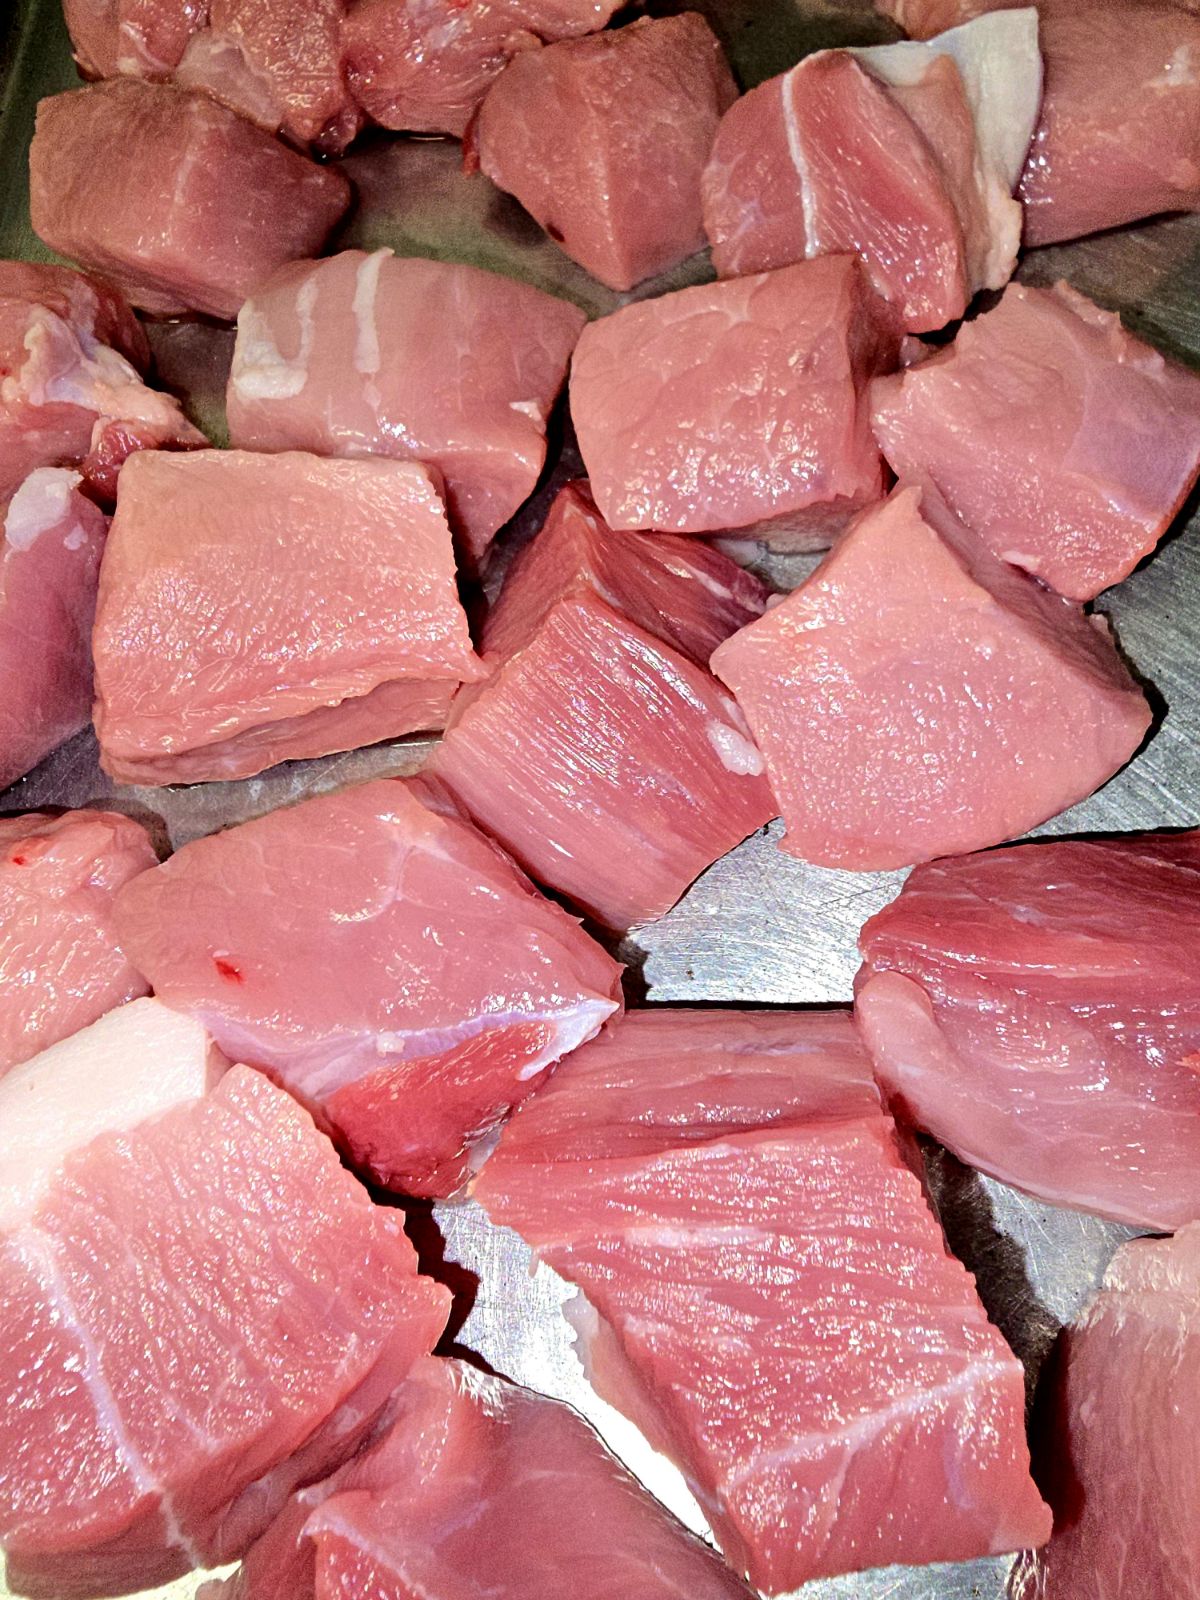 Pastured Pork Stew Meat